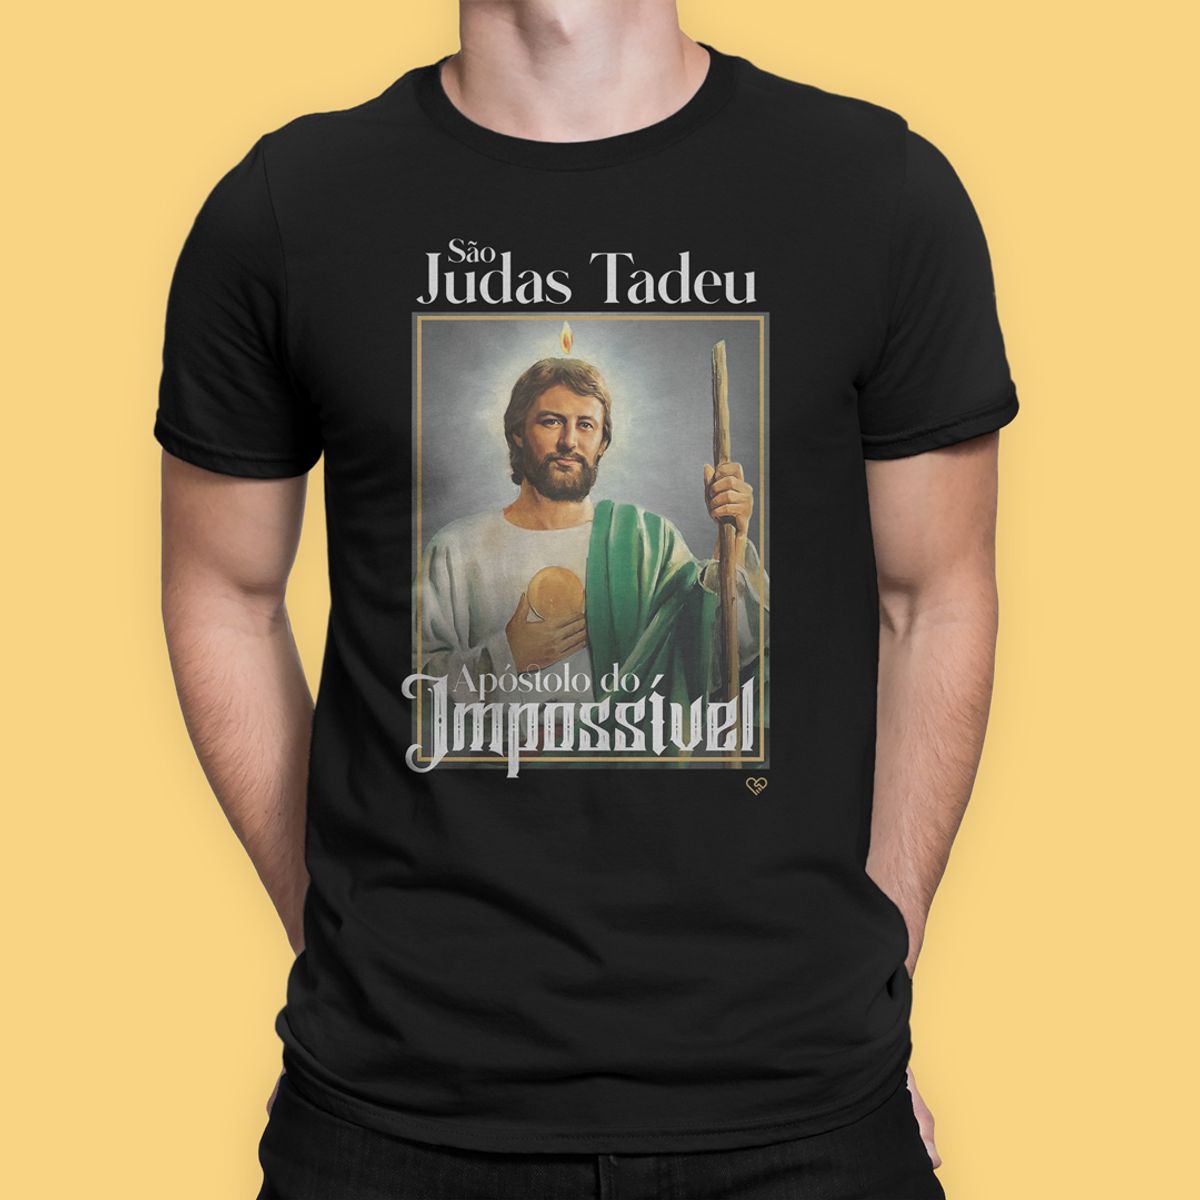 Nome do produto: Camiseta São Judas Tadeu - Apóstolo